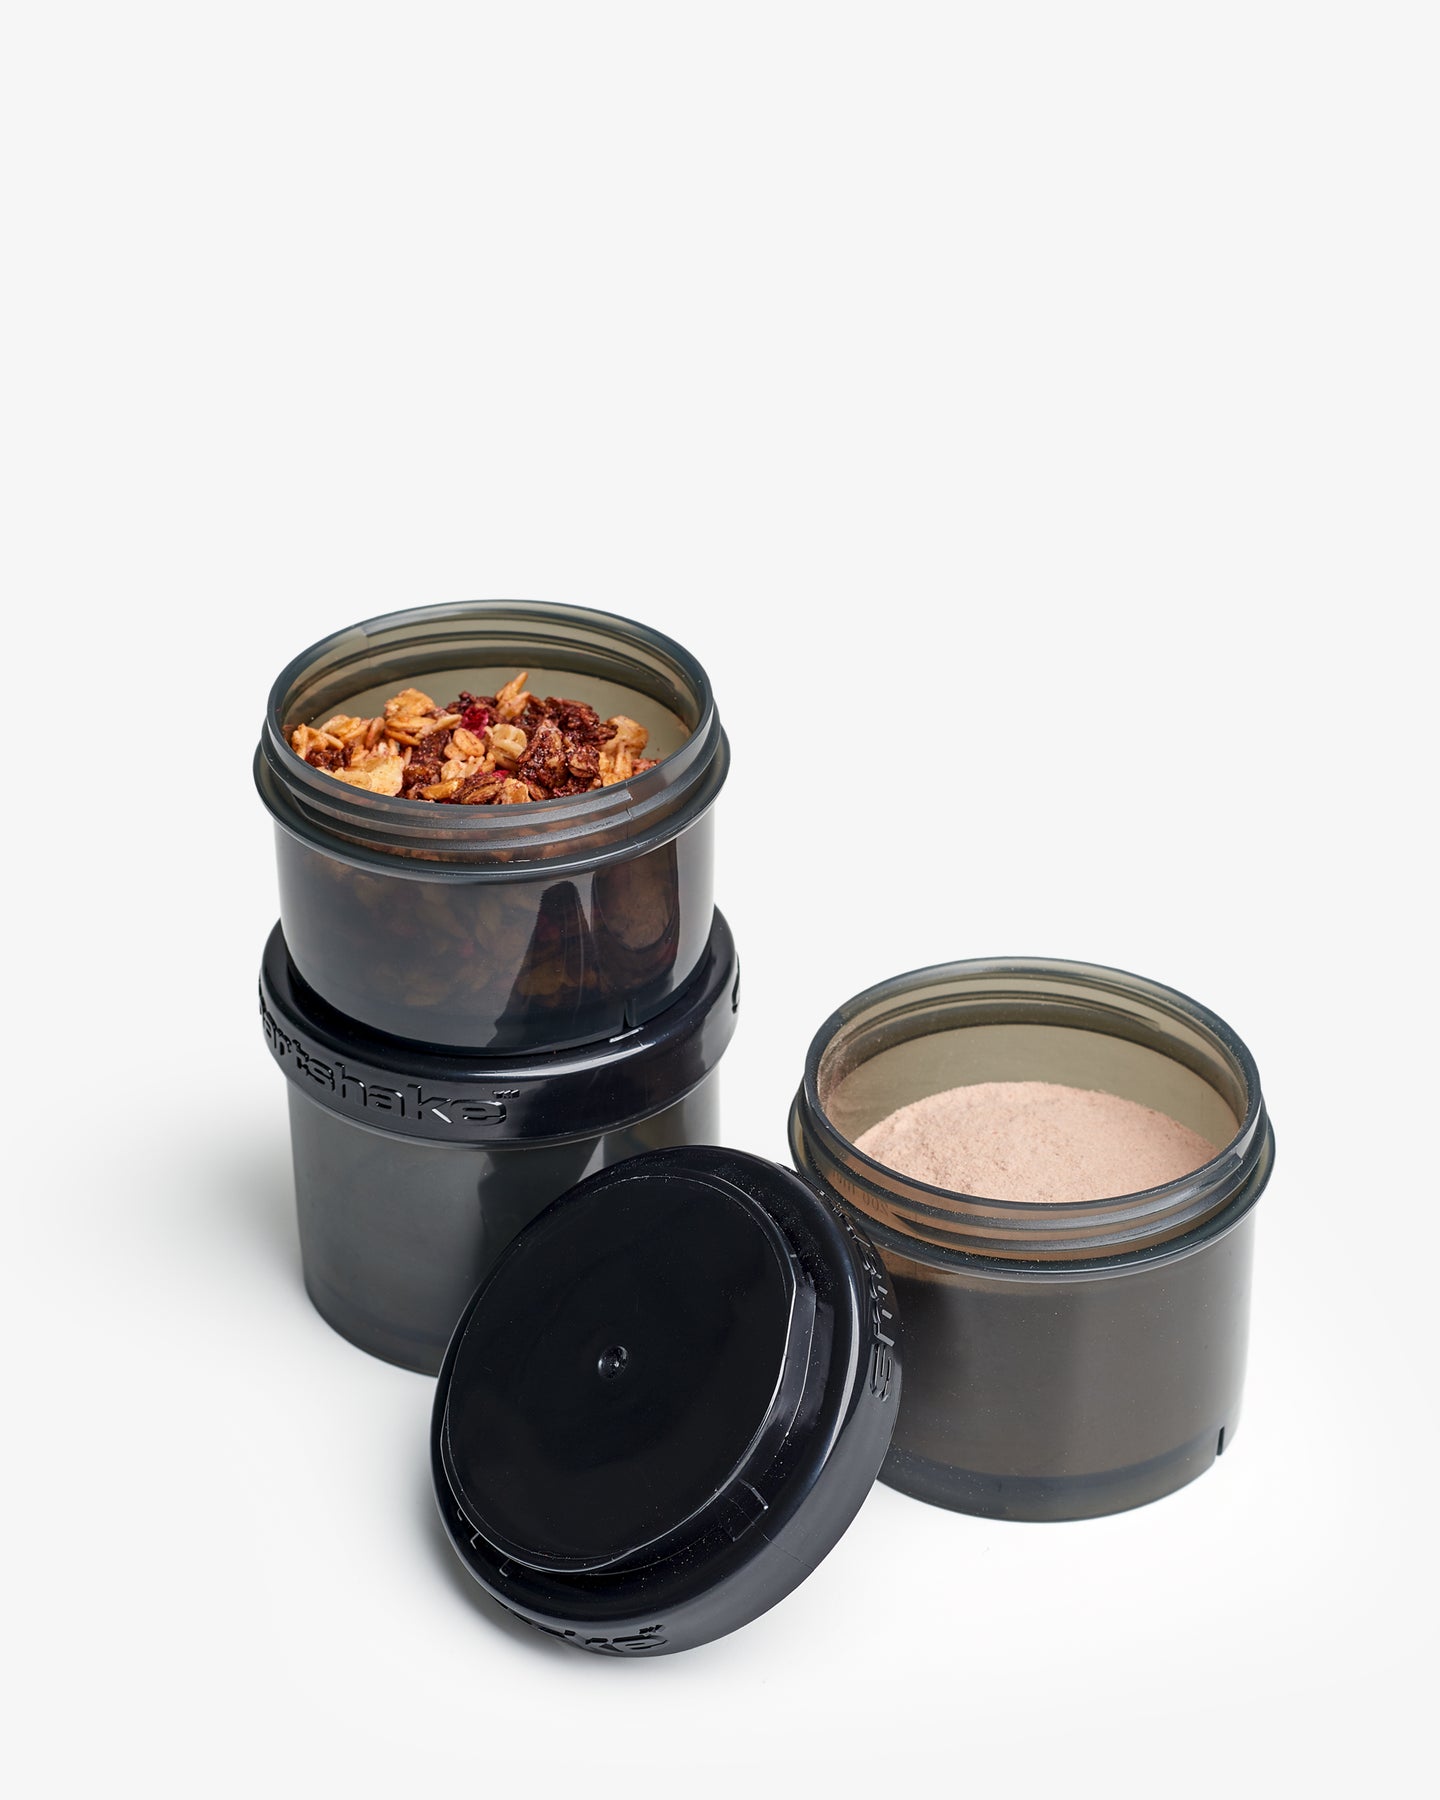 Food Storage Container Black – Smartshake